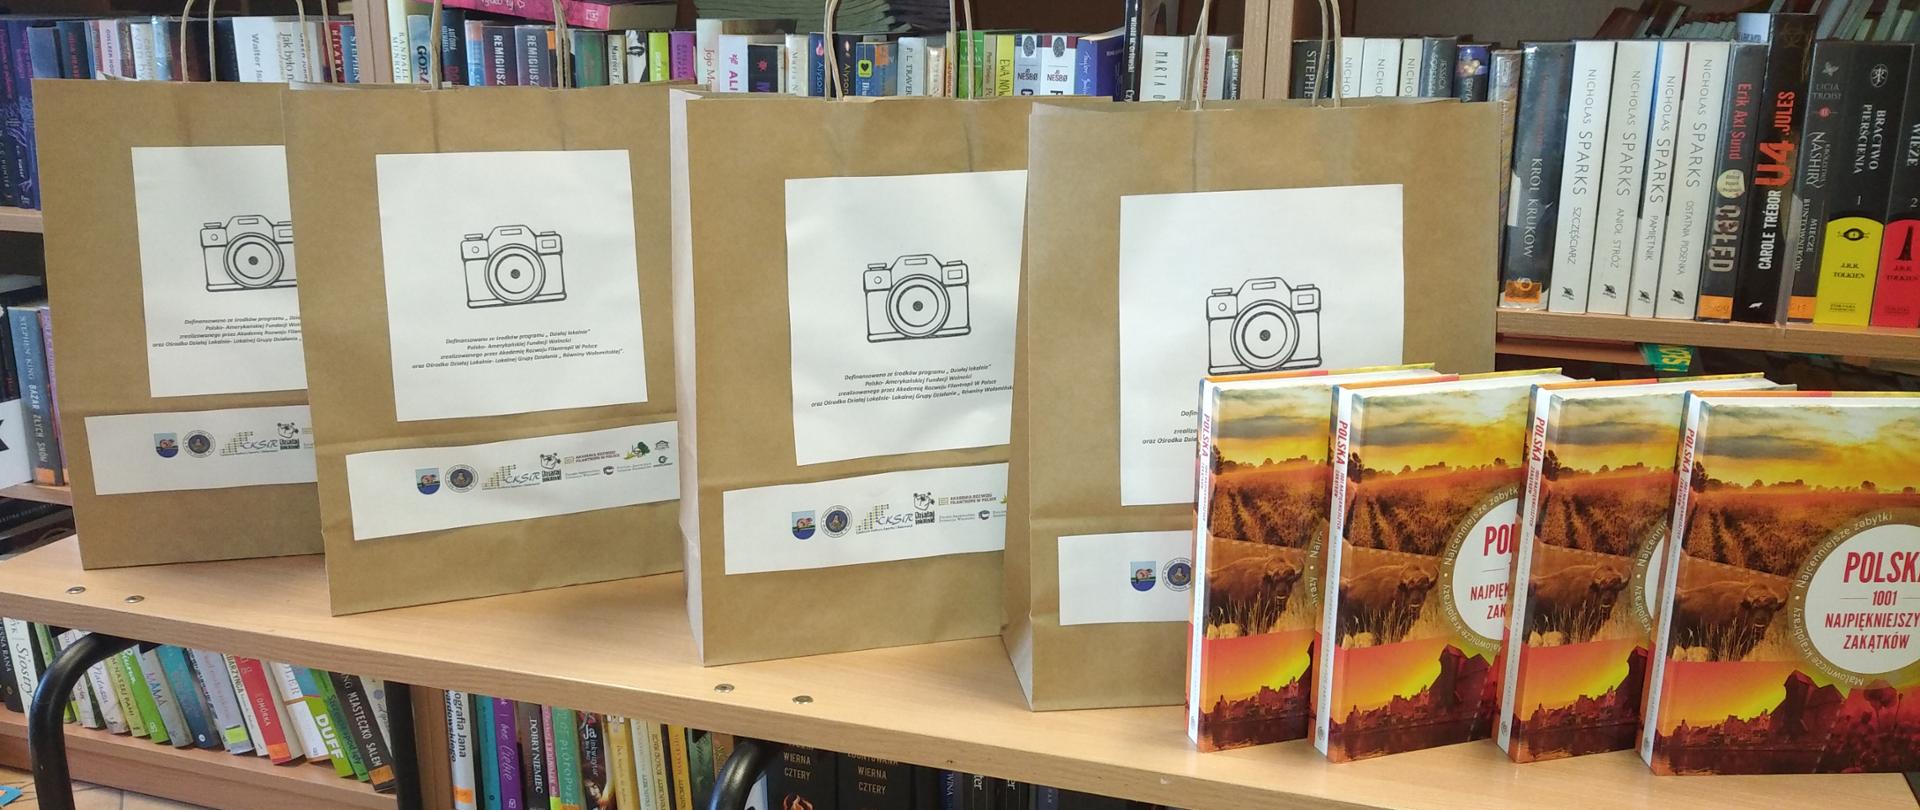 Ustawione na stoliku papierowe torby z obrazem aparatu fotograficznego oraz książki